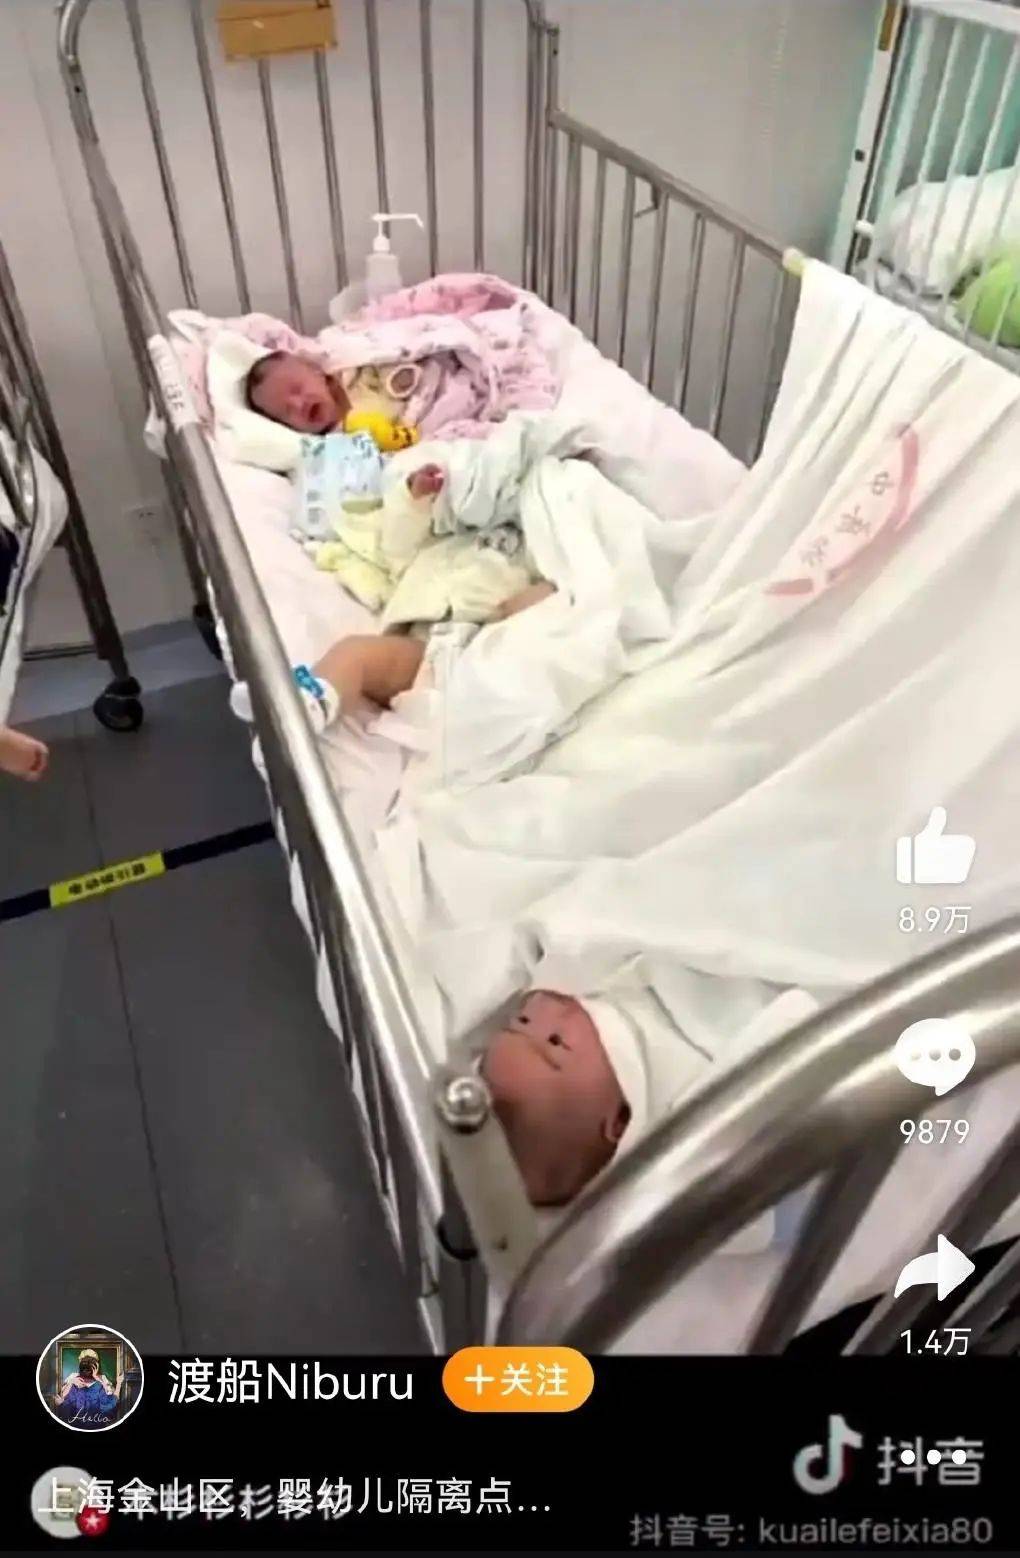 上海一婴幼儿单独隔离点照护不足，怎么能让父母安心？上海妇联回应